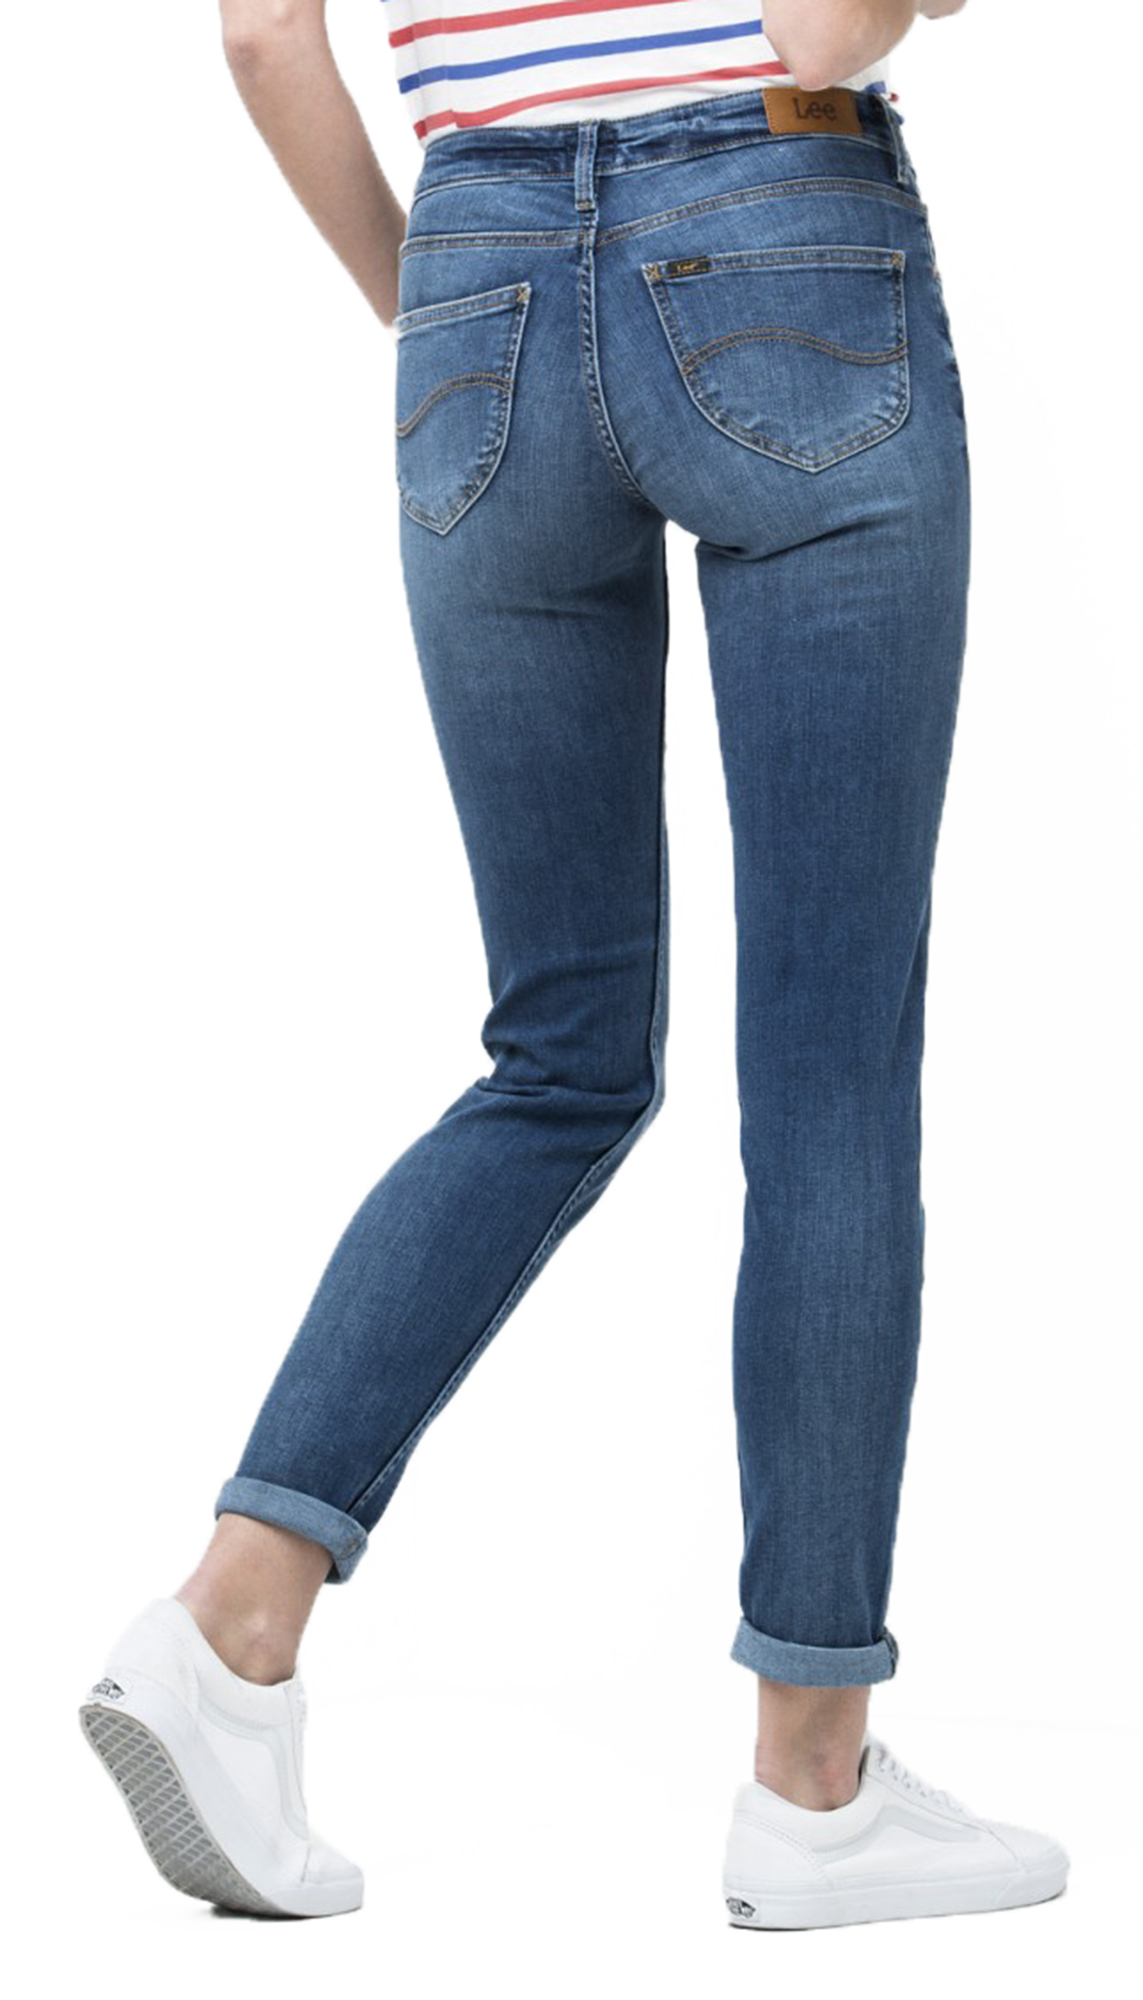 LEE Scarlett Ladies Stretch Jeans Women Skinny Leg Vintage Midtown ...